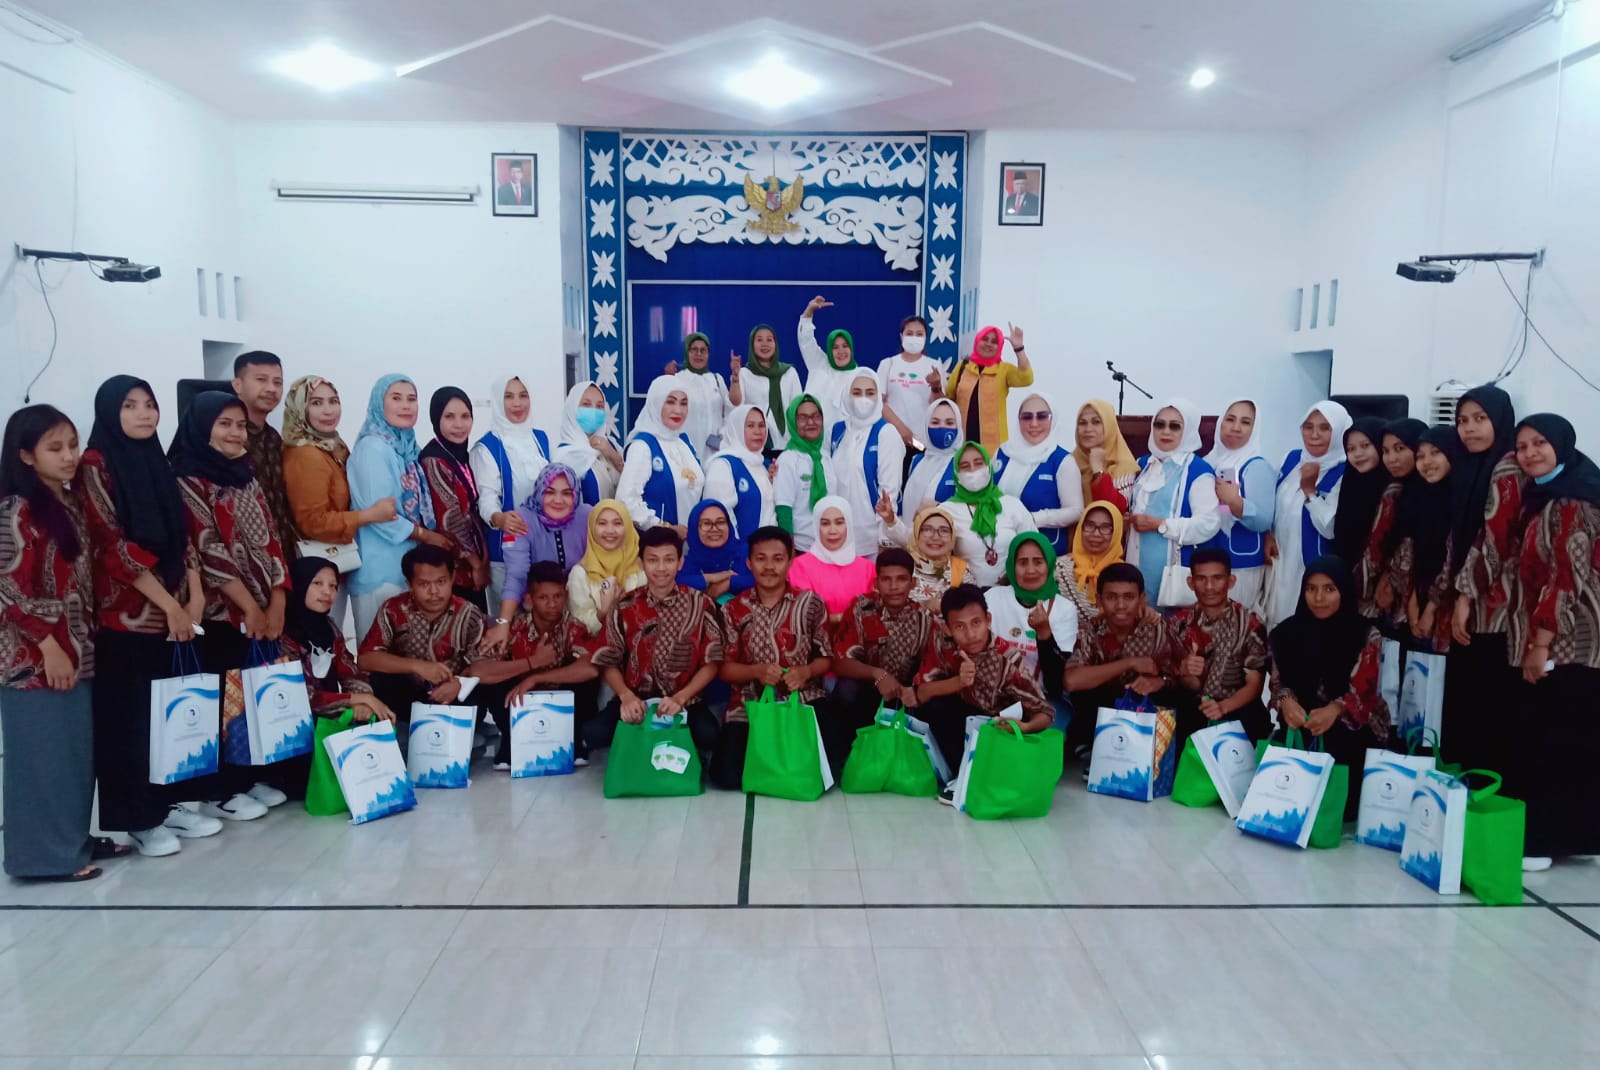 Dinas P3A PPKB Sulawesi Tenggara Gerakan Organisasi Wanita untuk Bakti Sosial